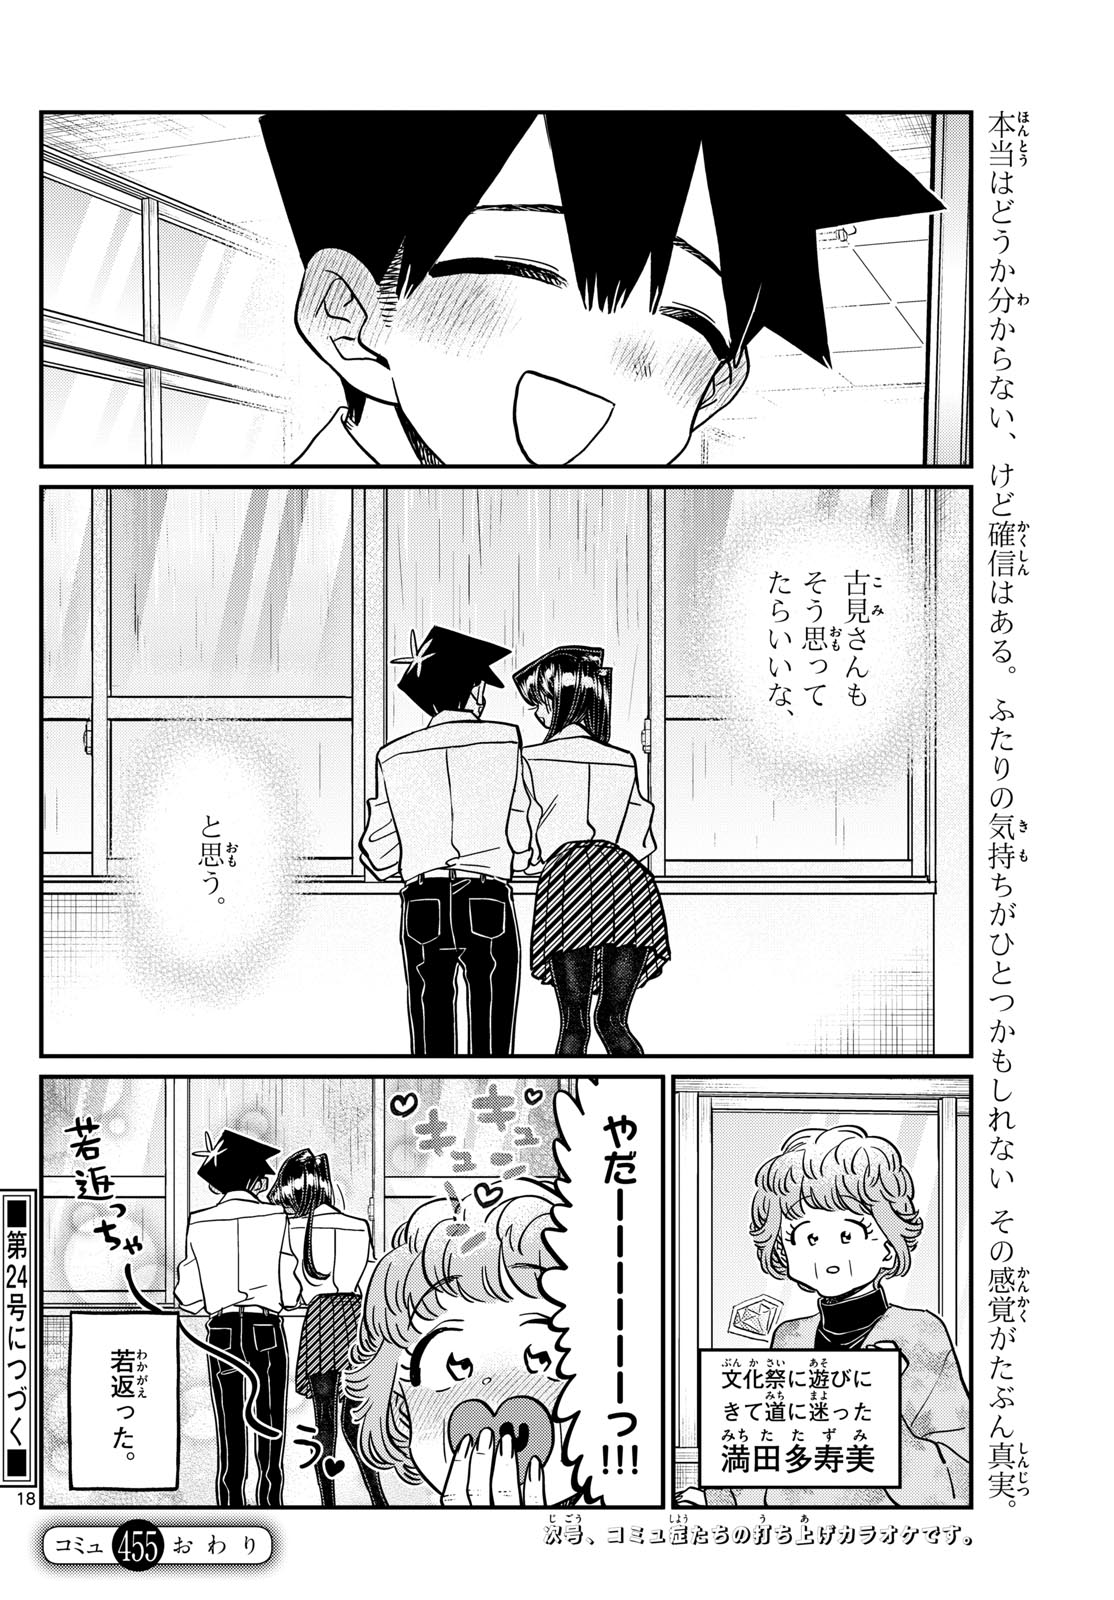 Komi-san wa Komyushou Desu - Chapter 455 - Page 18